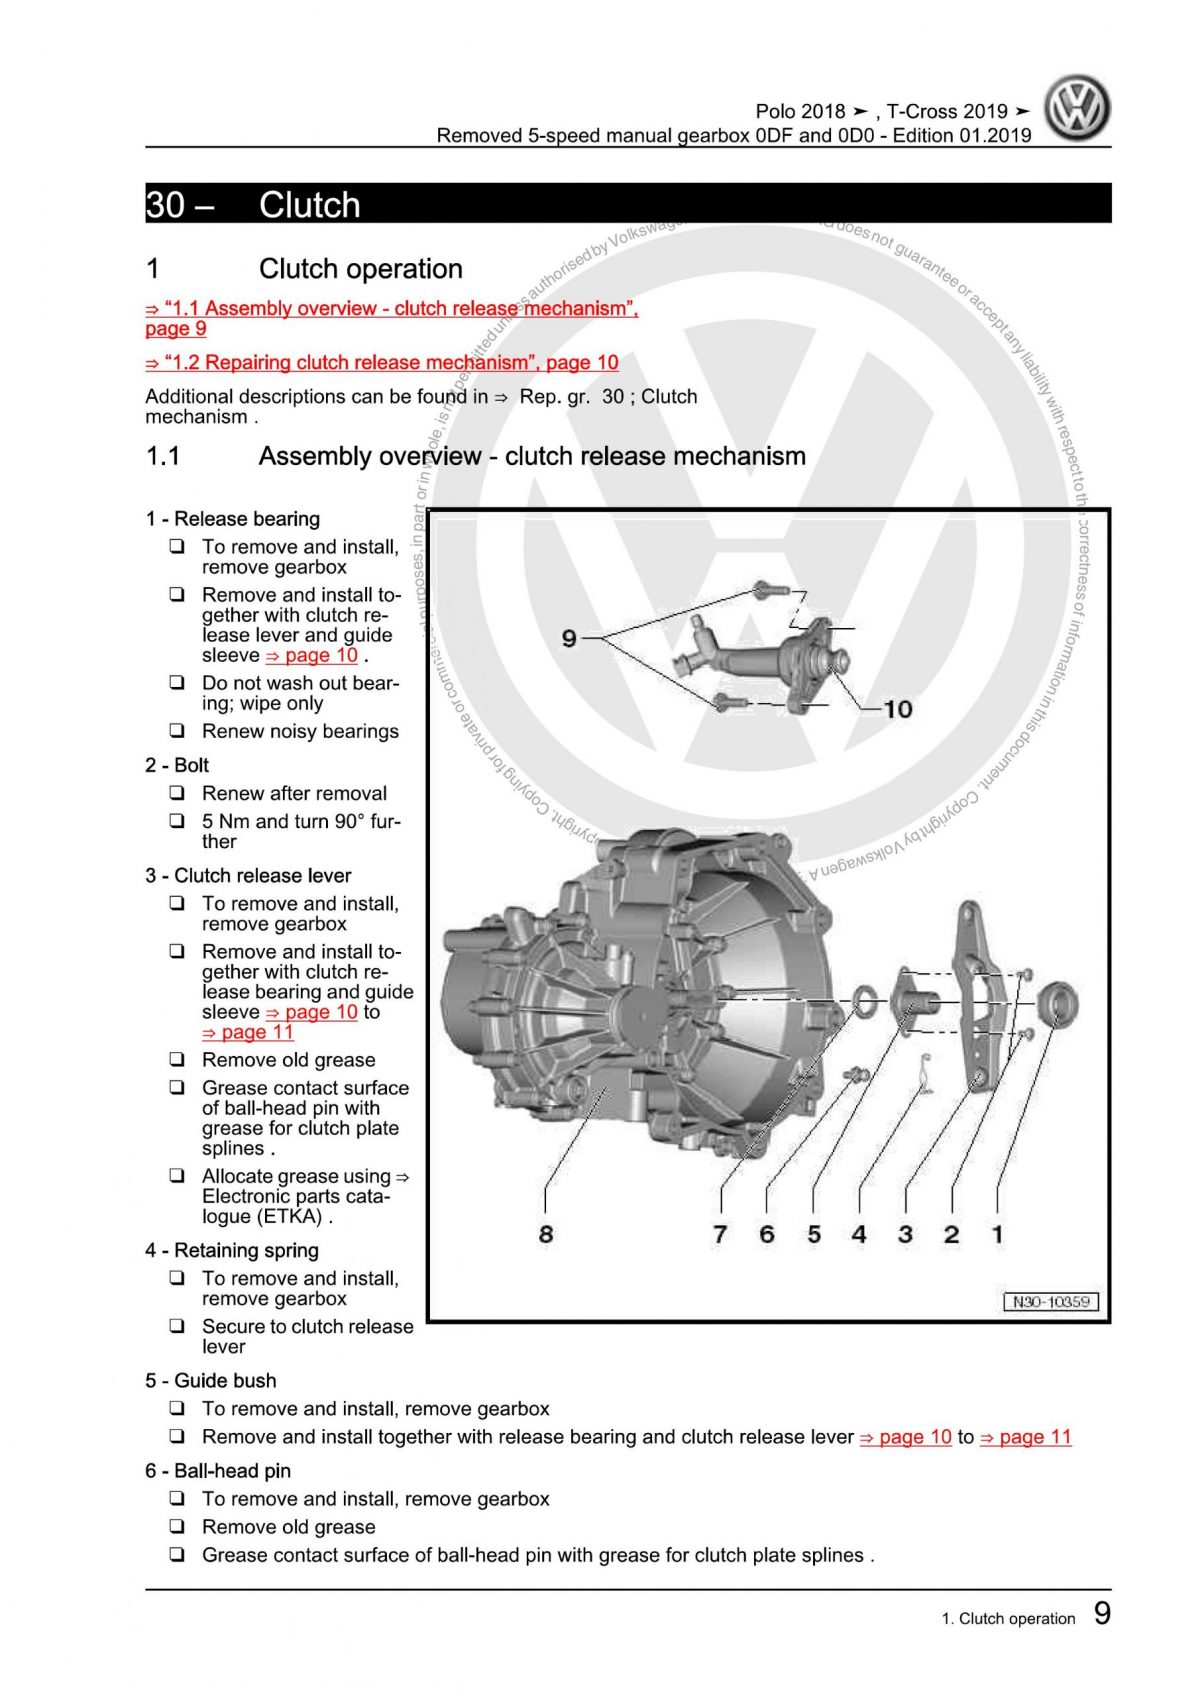 VW 5-Speed Manual Gearbox (0DF0D0) OEM Workshop Manual